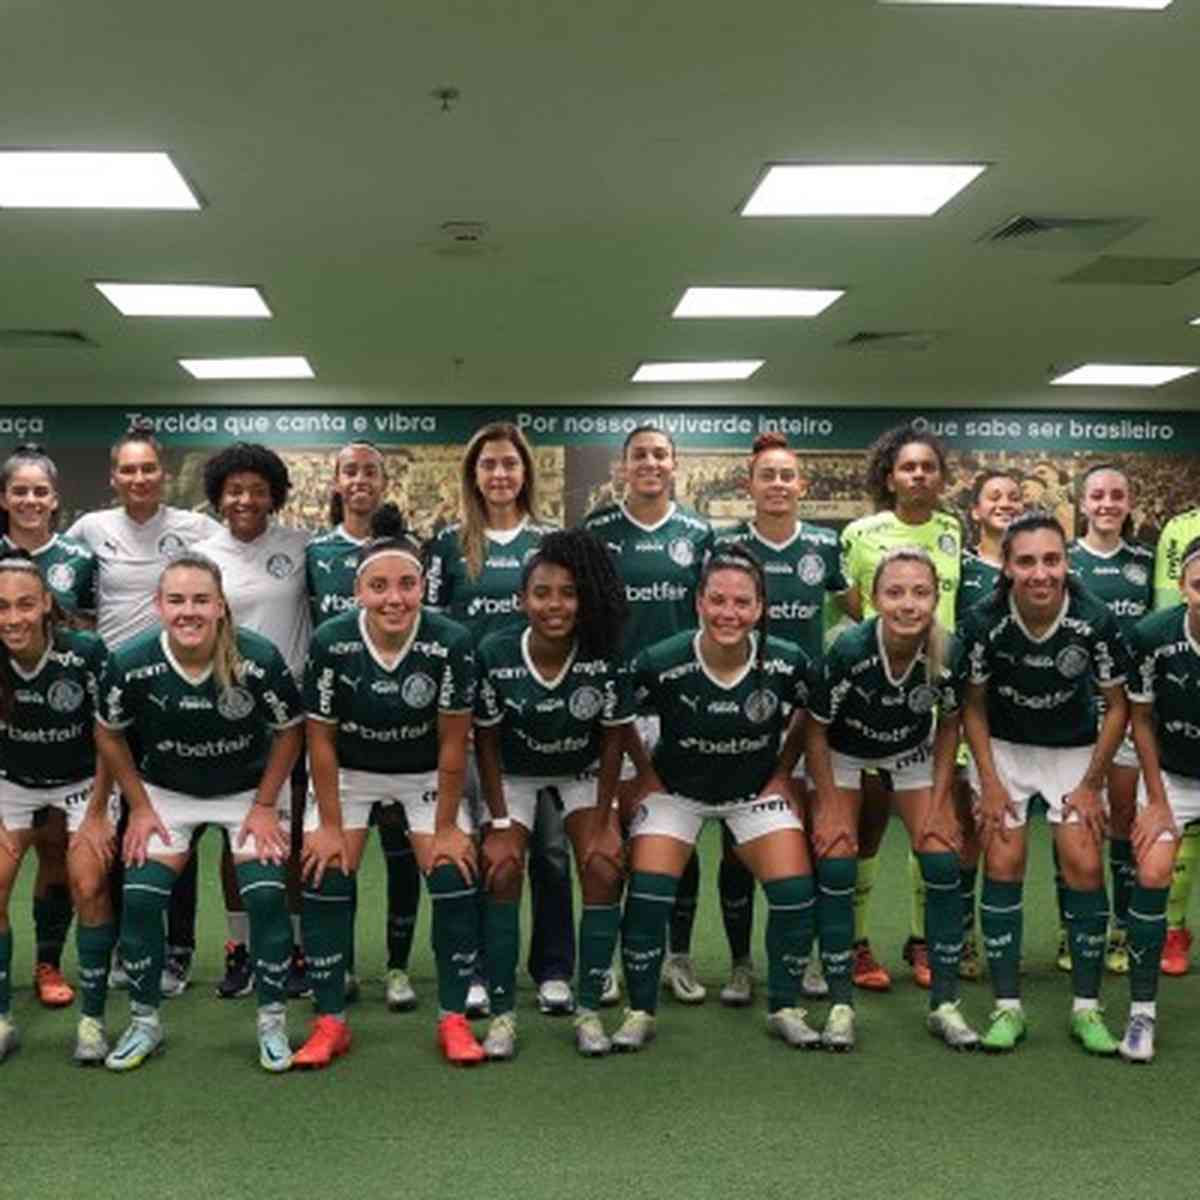 Globo Esporte RJ, Final do Paulista feminino entre Palmeiras e Santos  acontece nesta quarta com transmissão do sportv